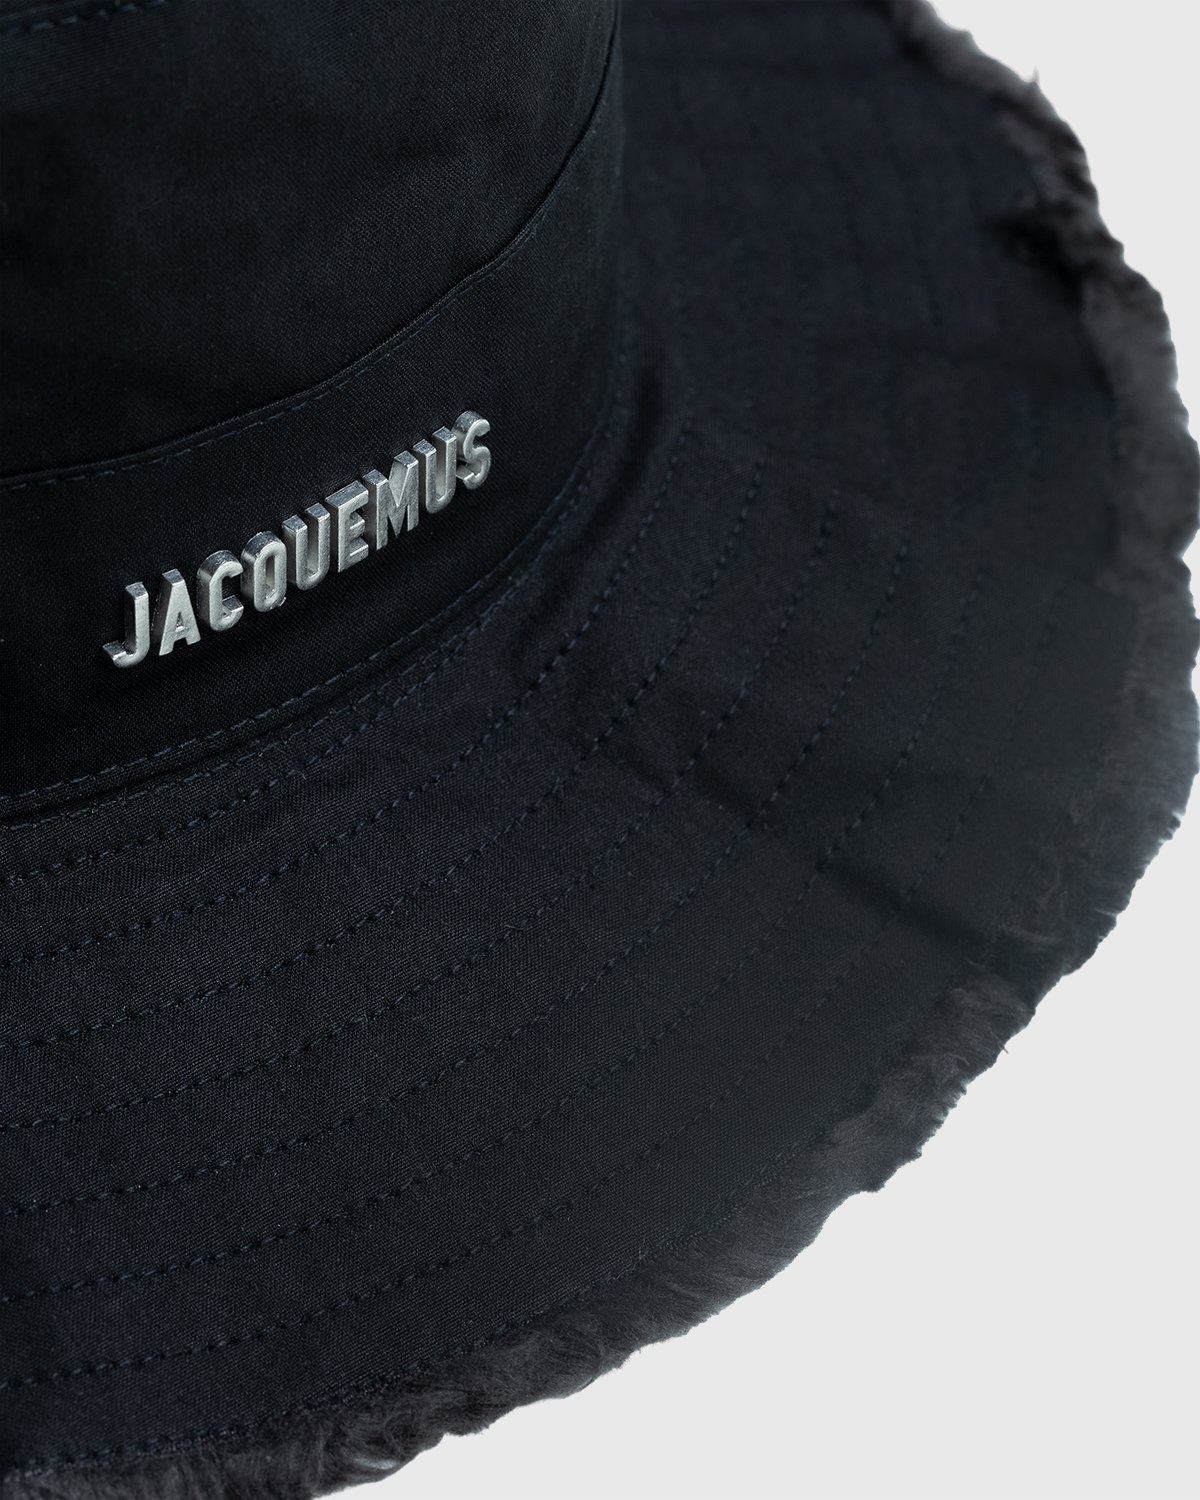 JACQUEMUS – Le Bob Artichaut Black - Bucket Hats - Black - Image 4